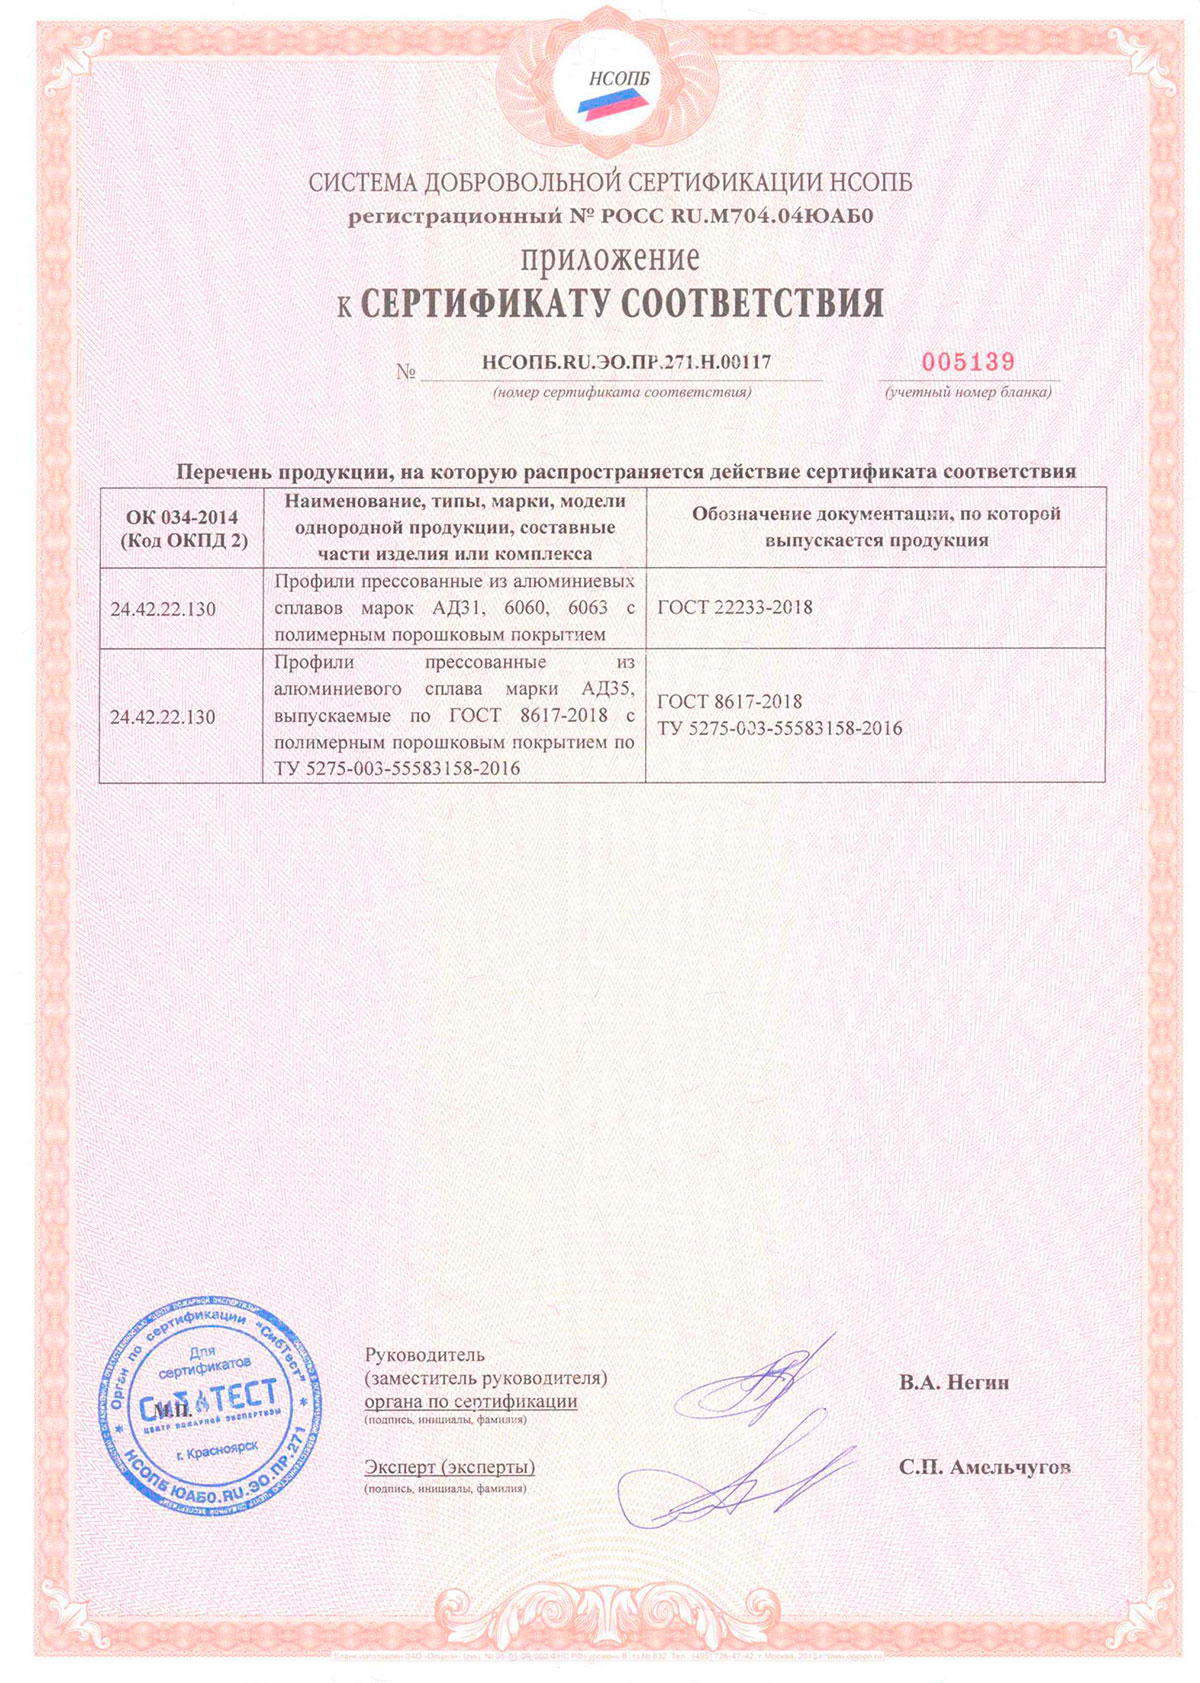 ЛПЗ Сегал, приложение к сертификату соответствия (перечень), 20.01.2025